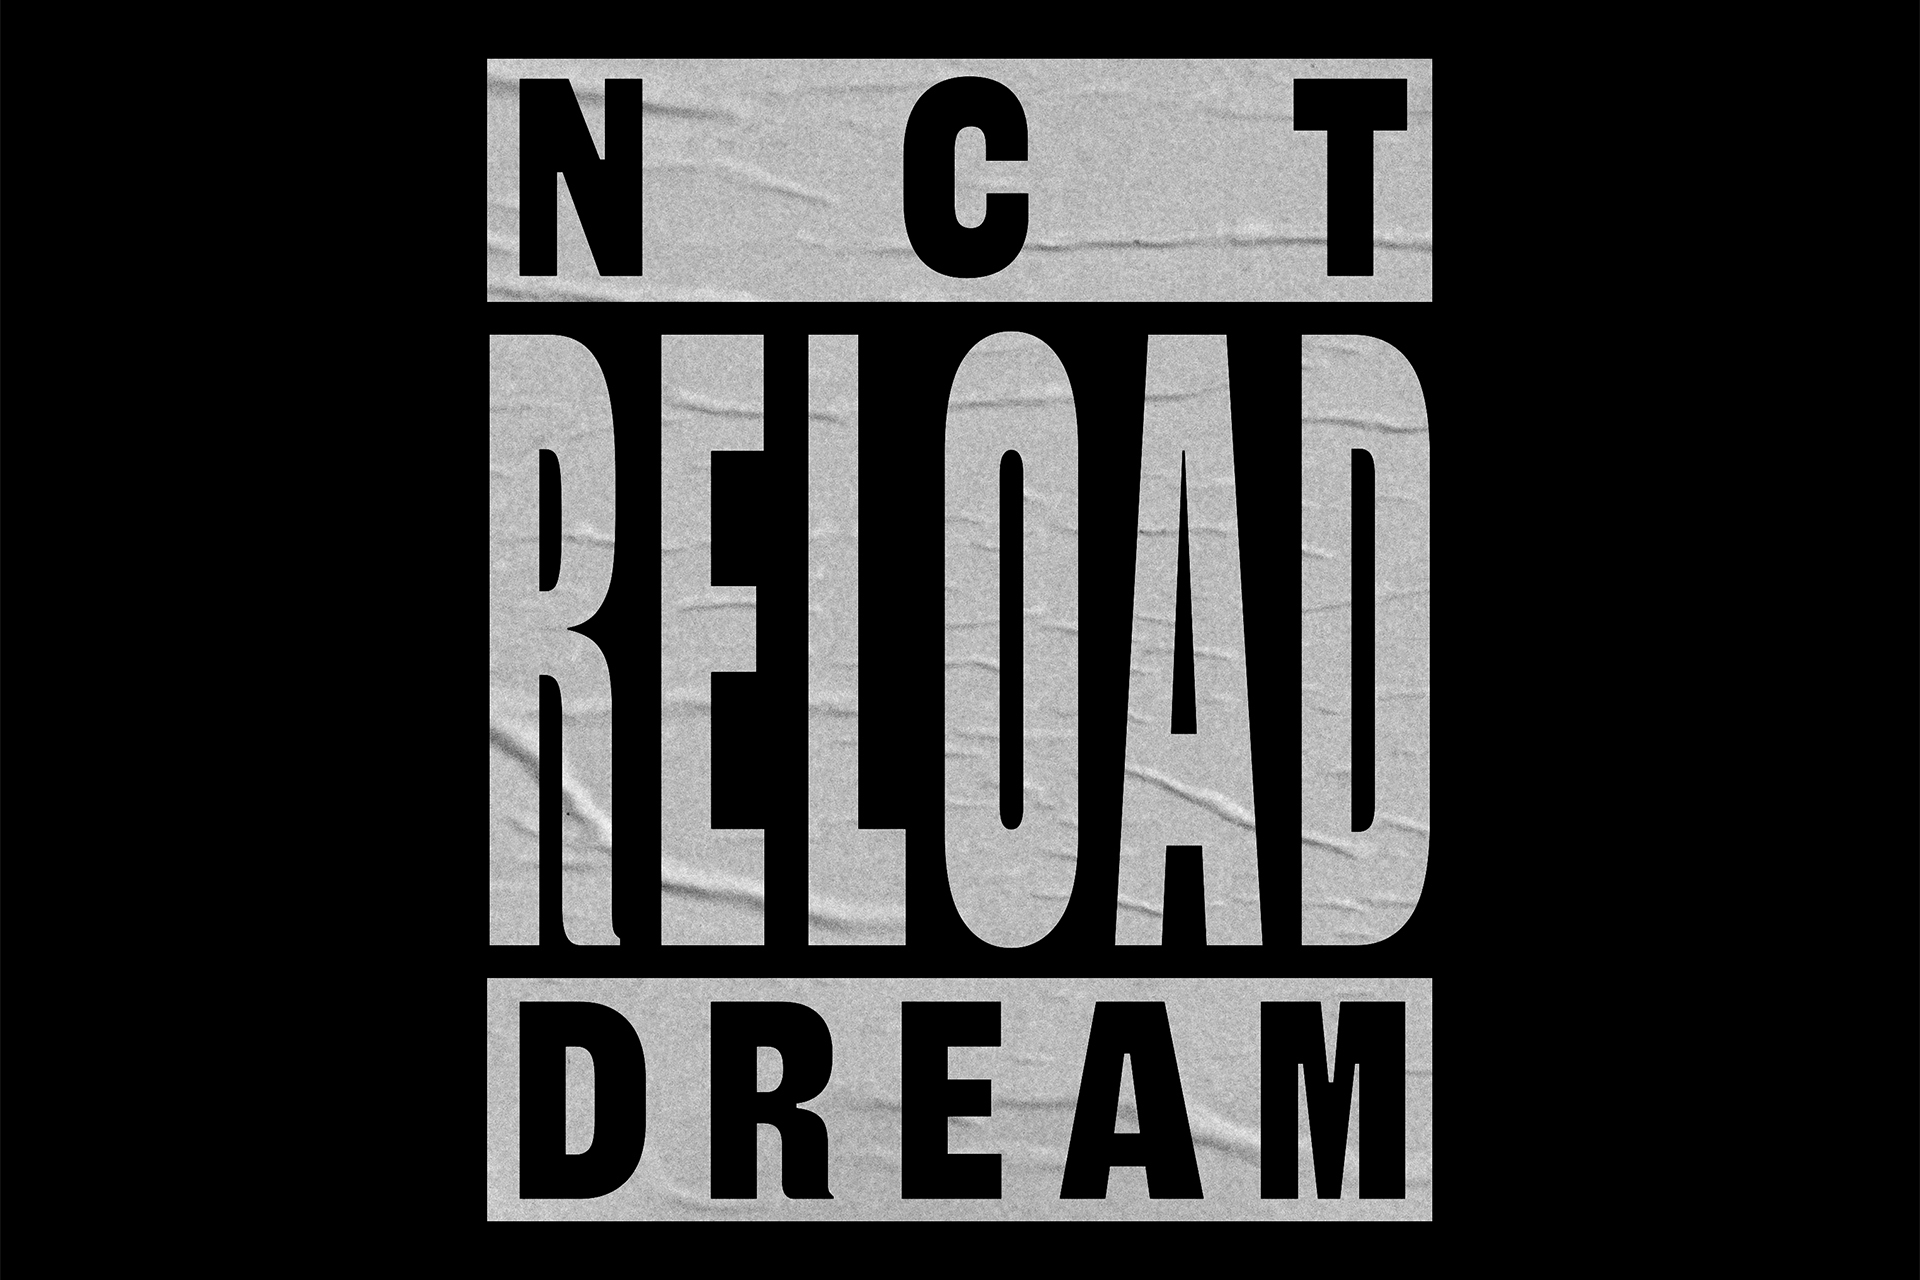 nct dream将于4月携新专辑回归后迎来新的开篇!